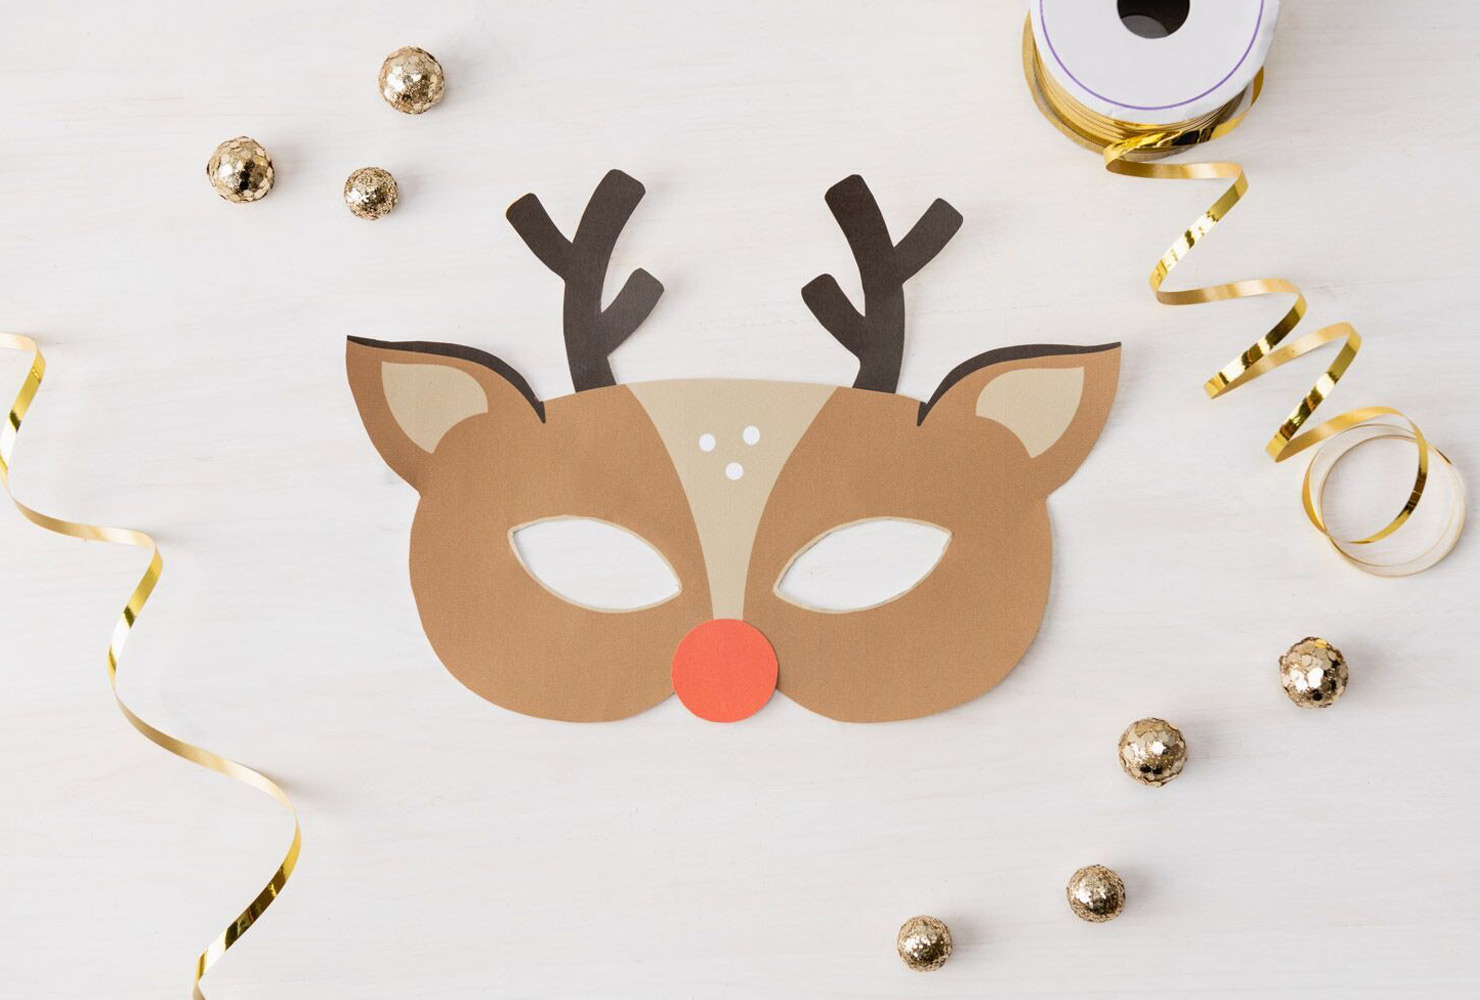 29 Christmas Crafts For Kids + Free Printable Crafts | Shutterfly - Free Printable Crafts For Preschoolers